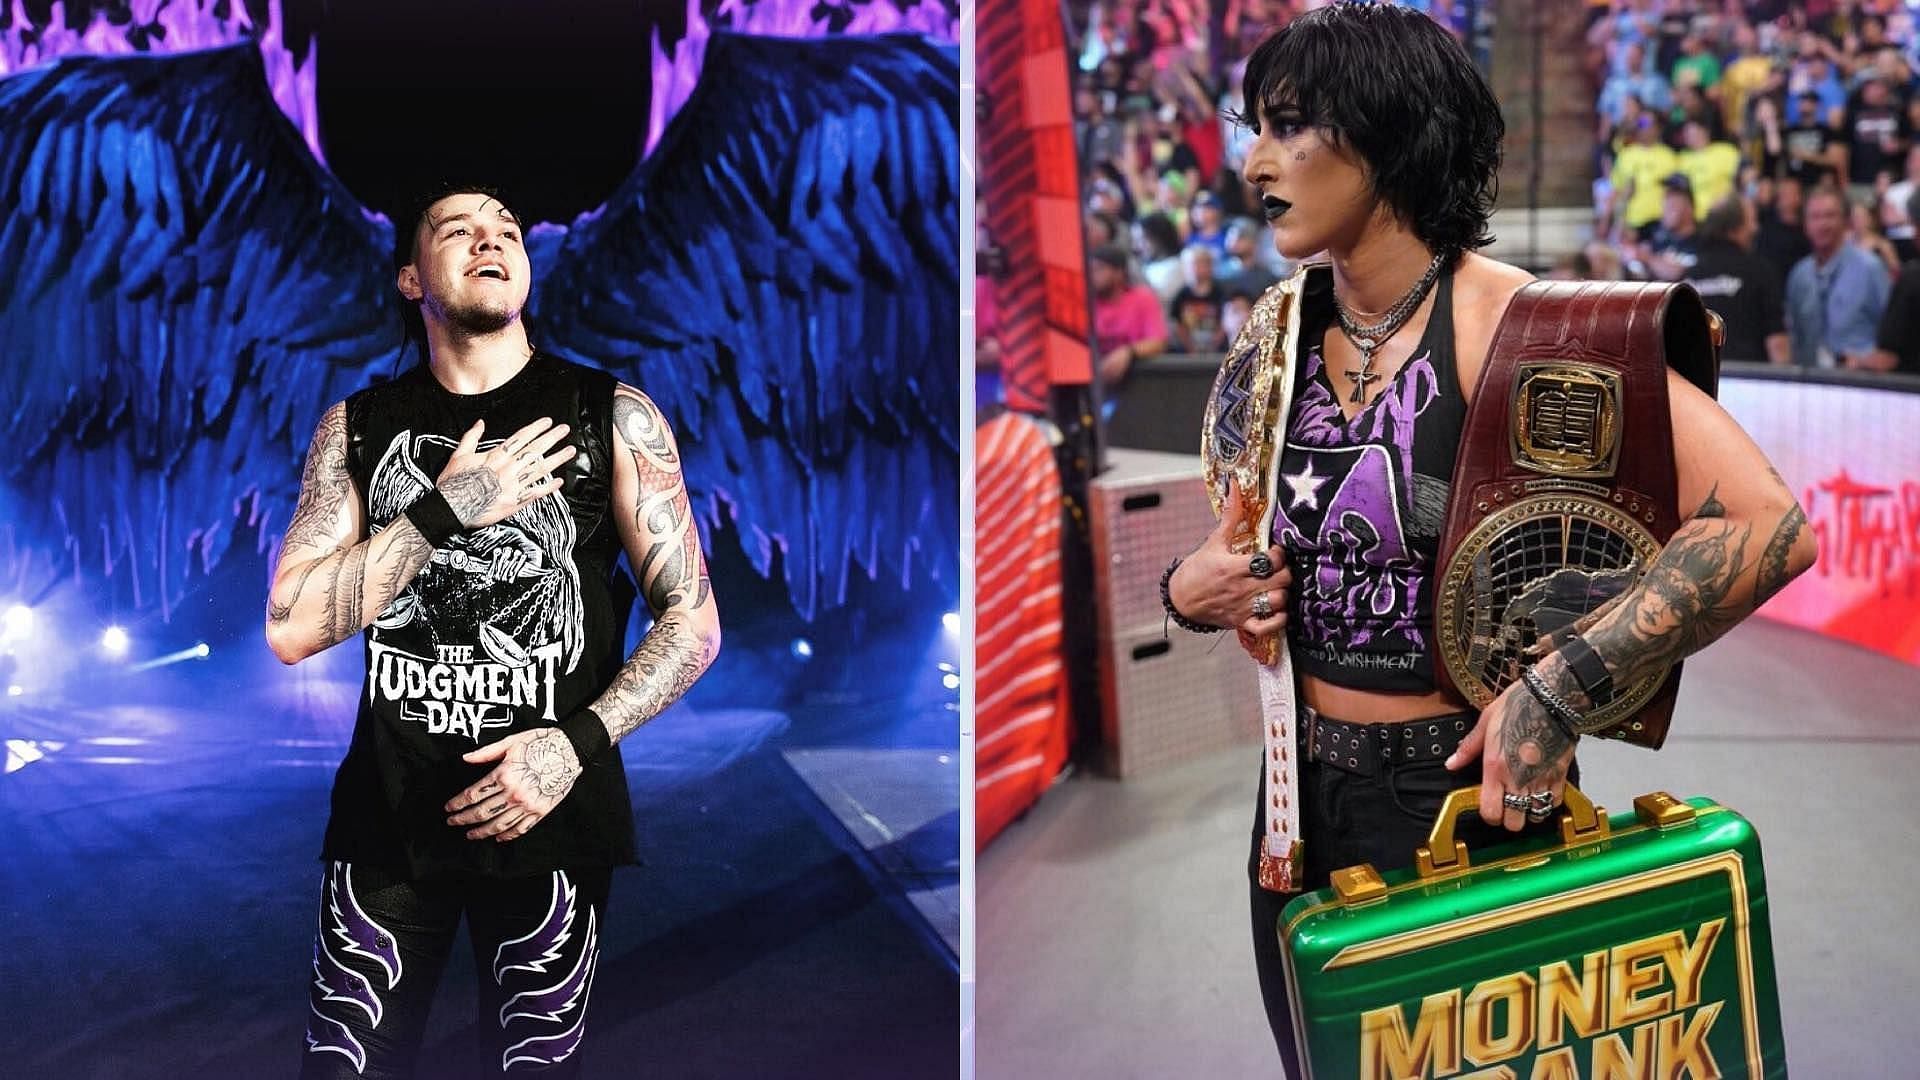 WWE NXT के अगले एपिसोड में जजमेंट डे का बड़ा मैच होगा 